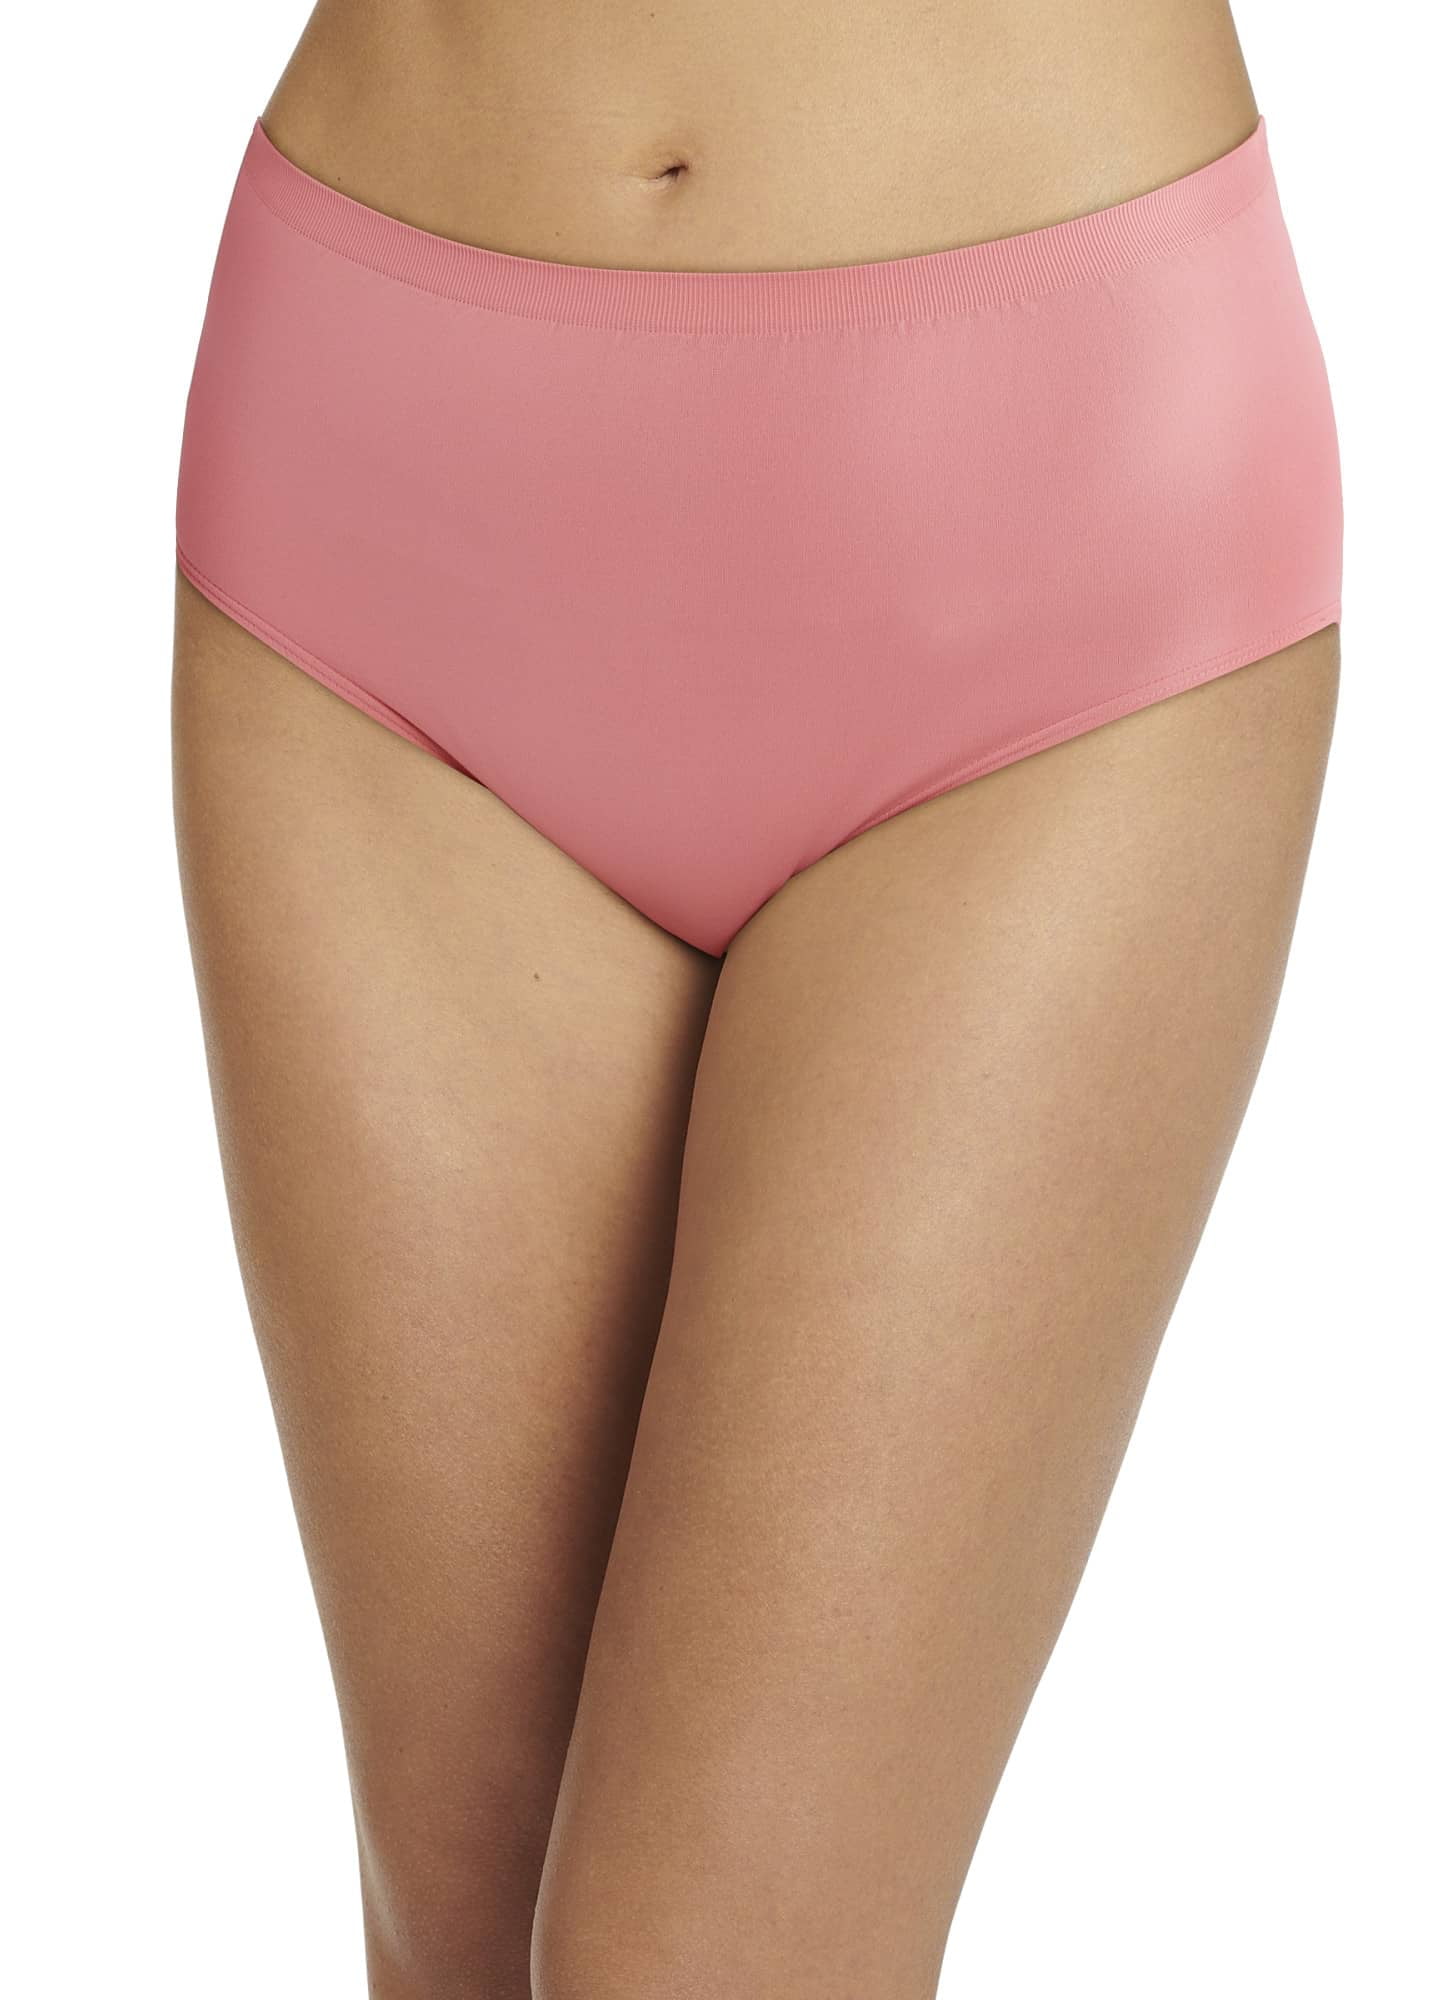  Jockey Womens Underwear Comfies Microfiber Brief - 3 Pack